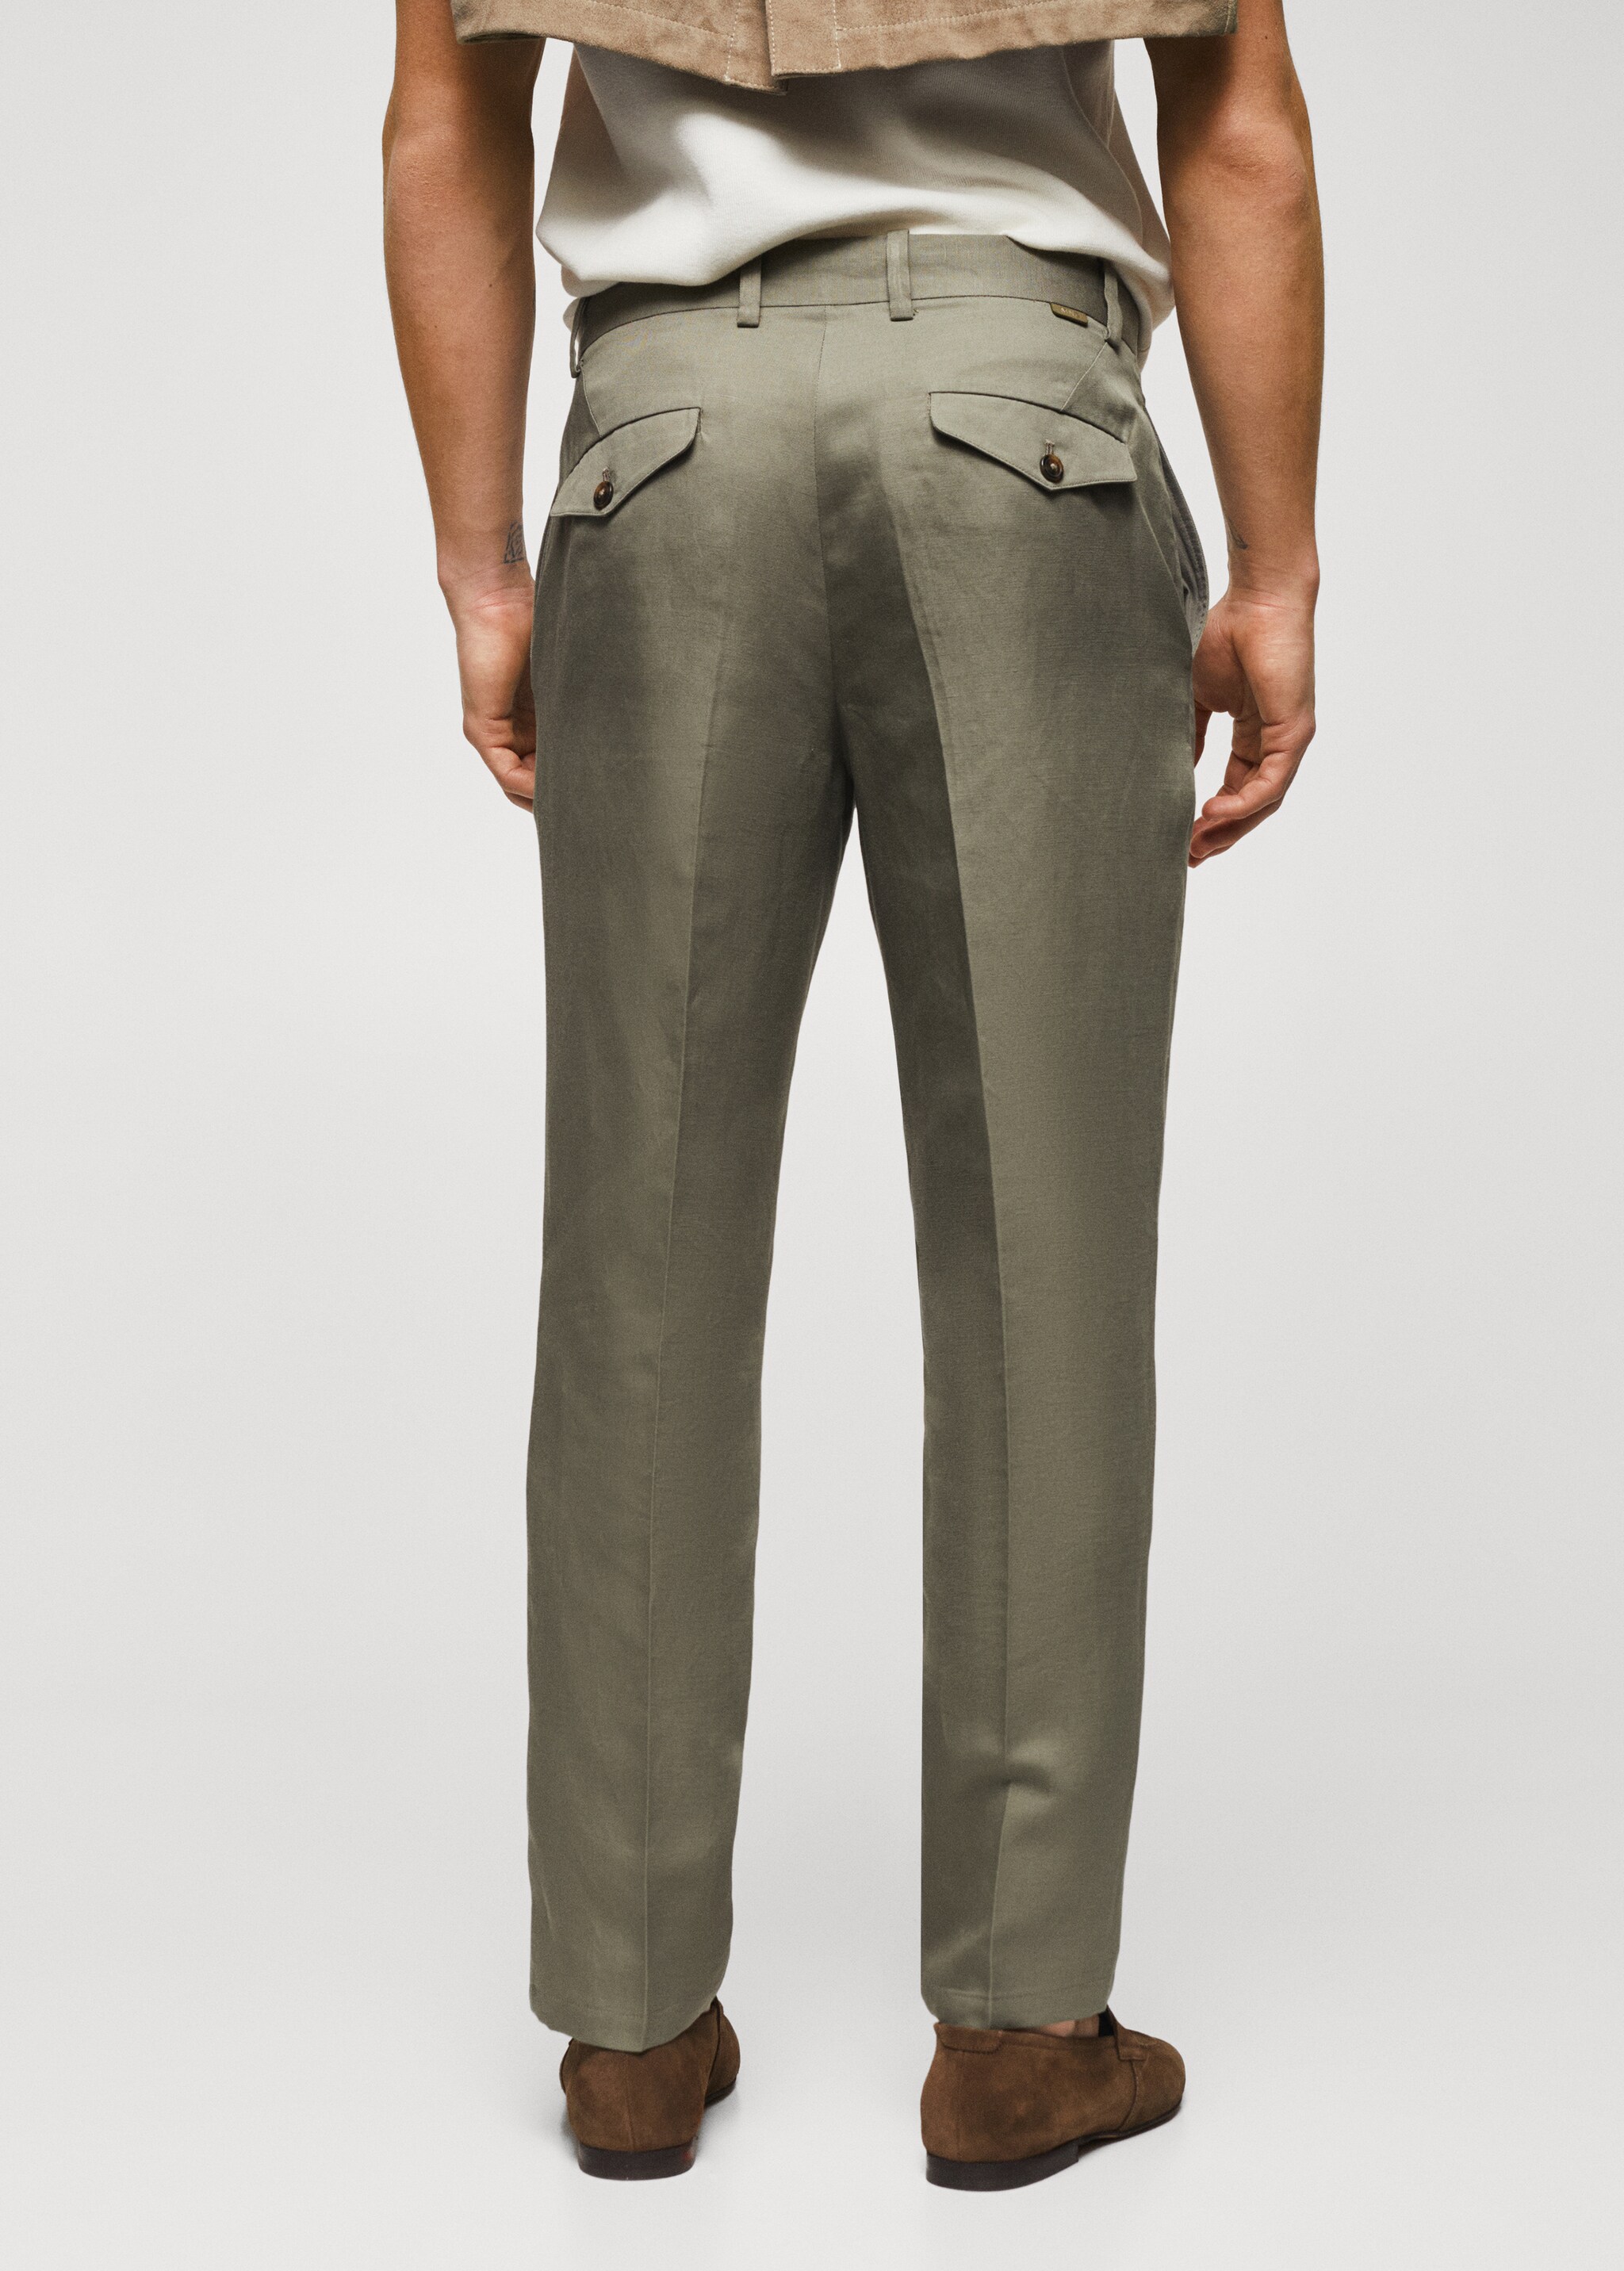 Pantalón slim fit lyocell lino  - Reverso del artículo